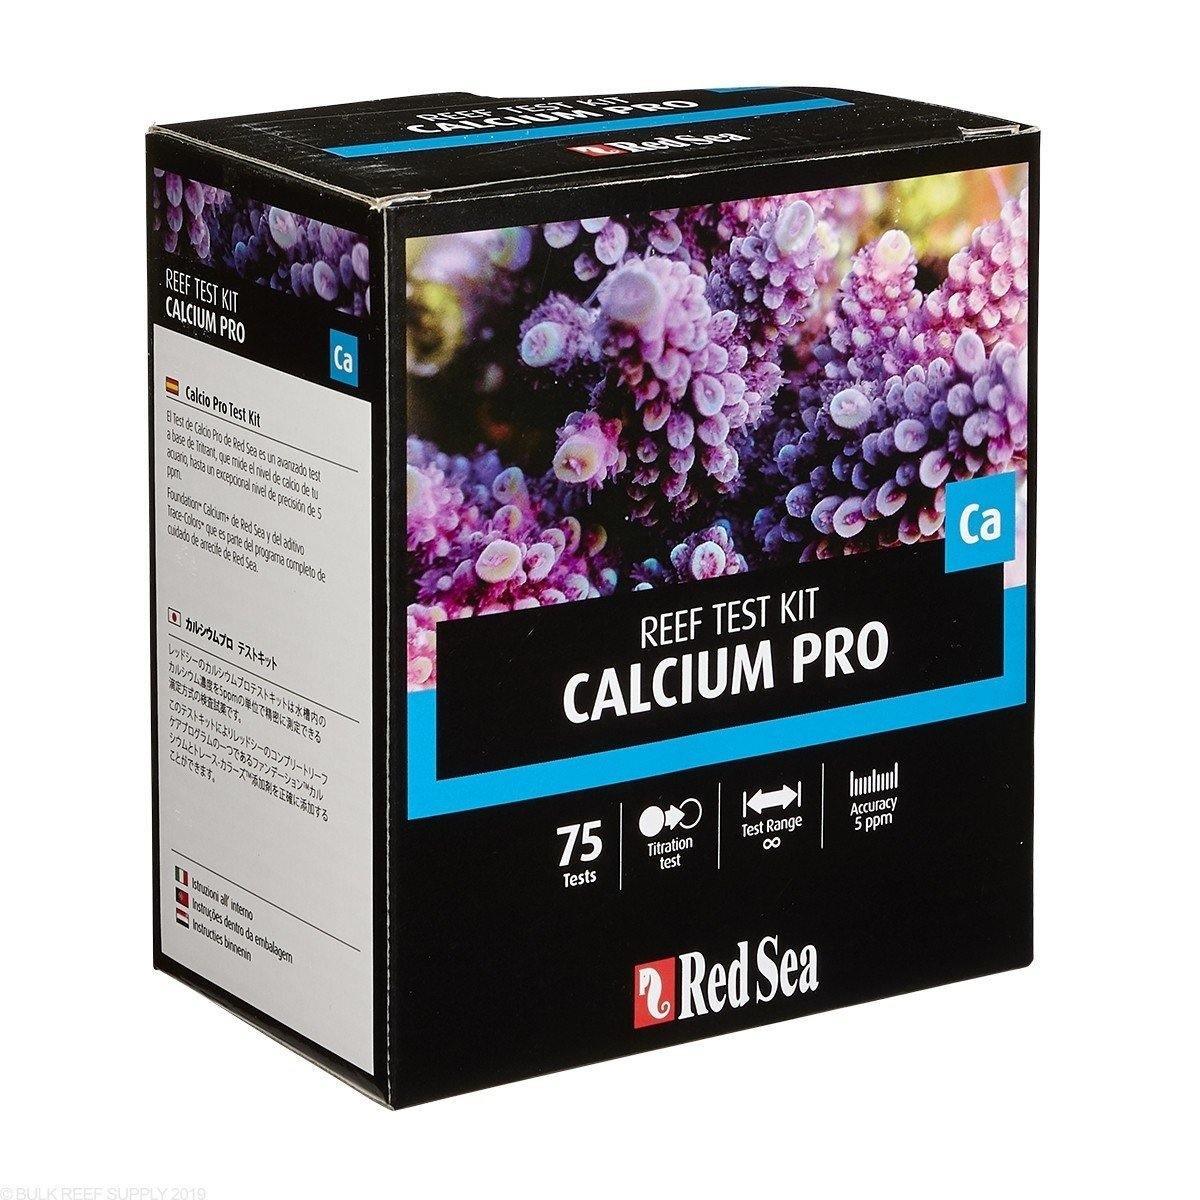 Red Sea Calcium Pro Test Kit - Amazing Amazon